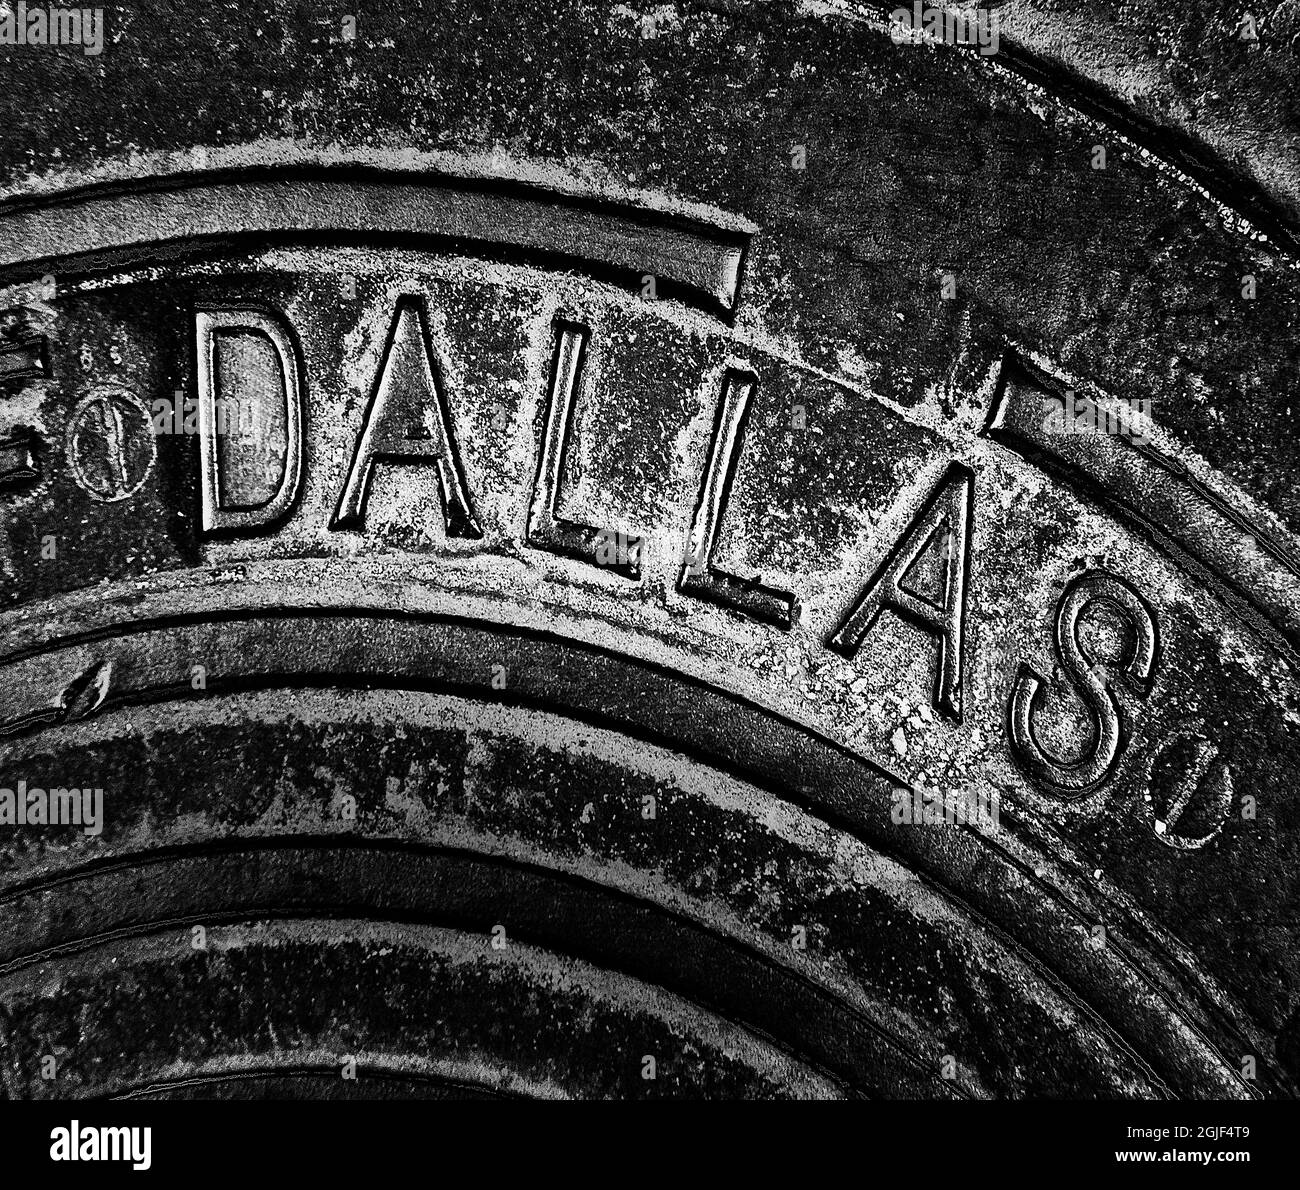 Dallas Texas manhole cover Stock Photo